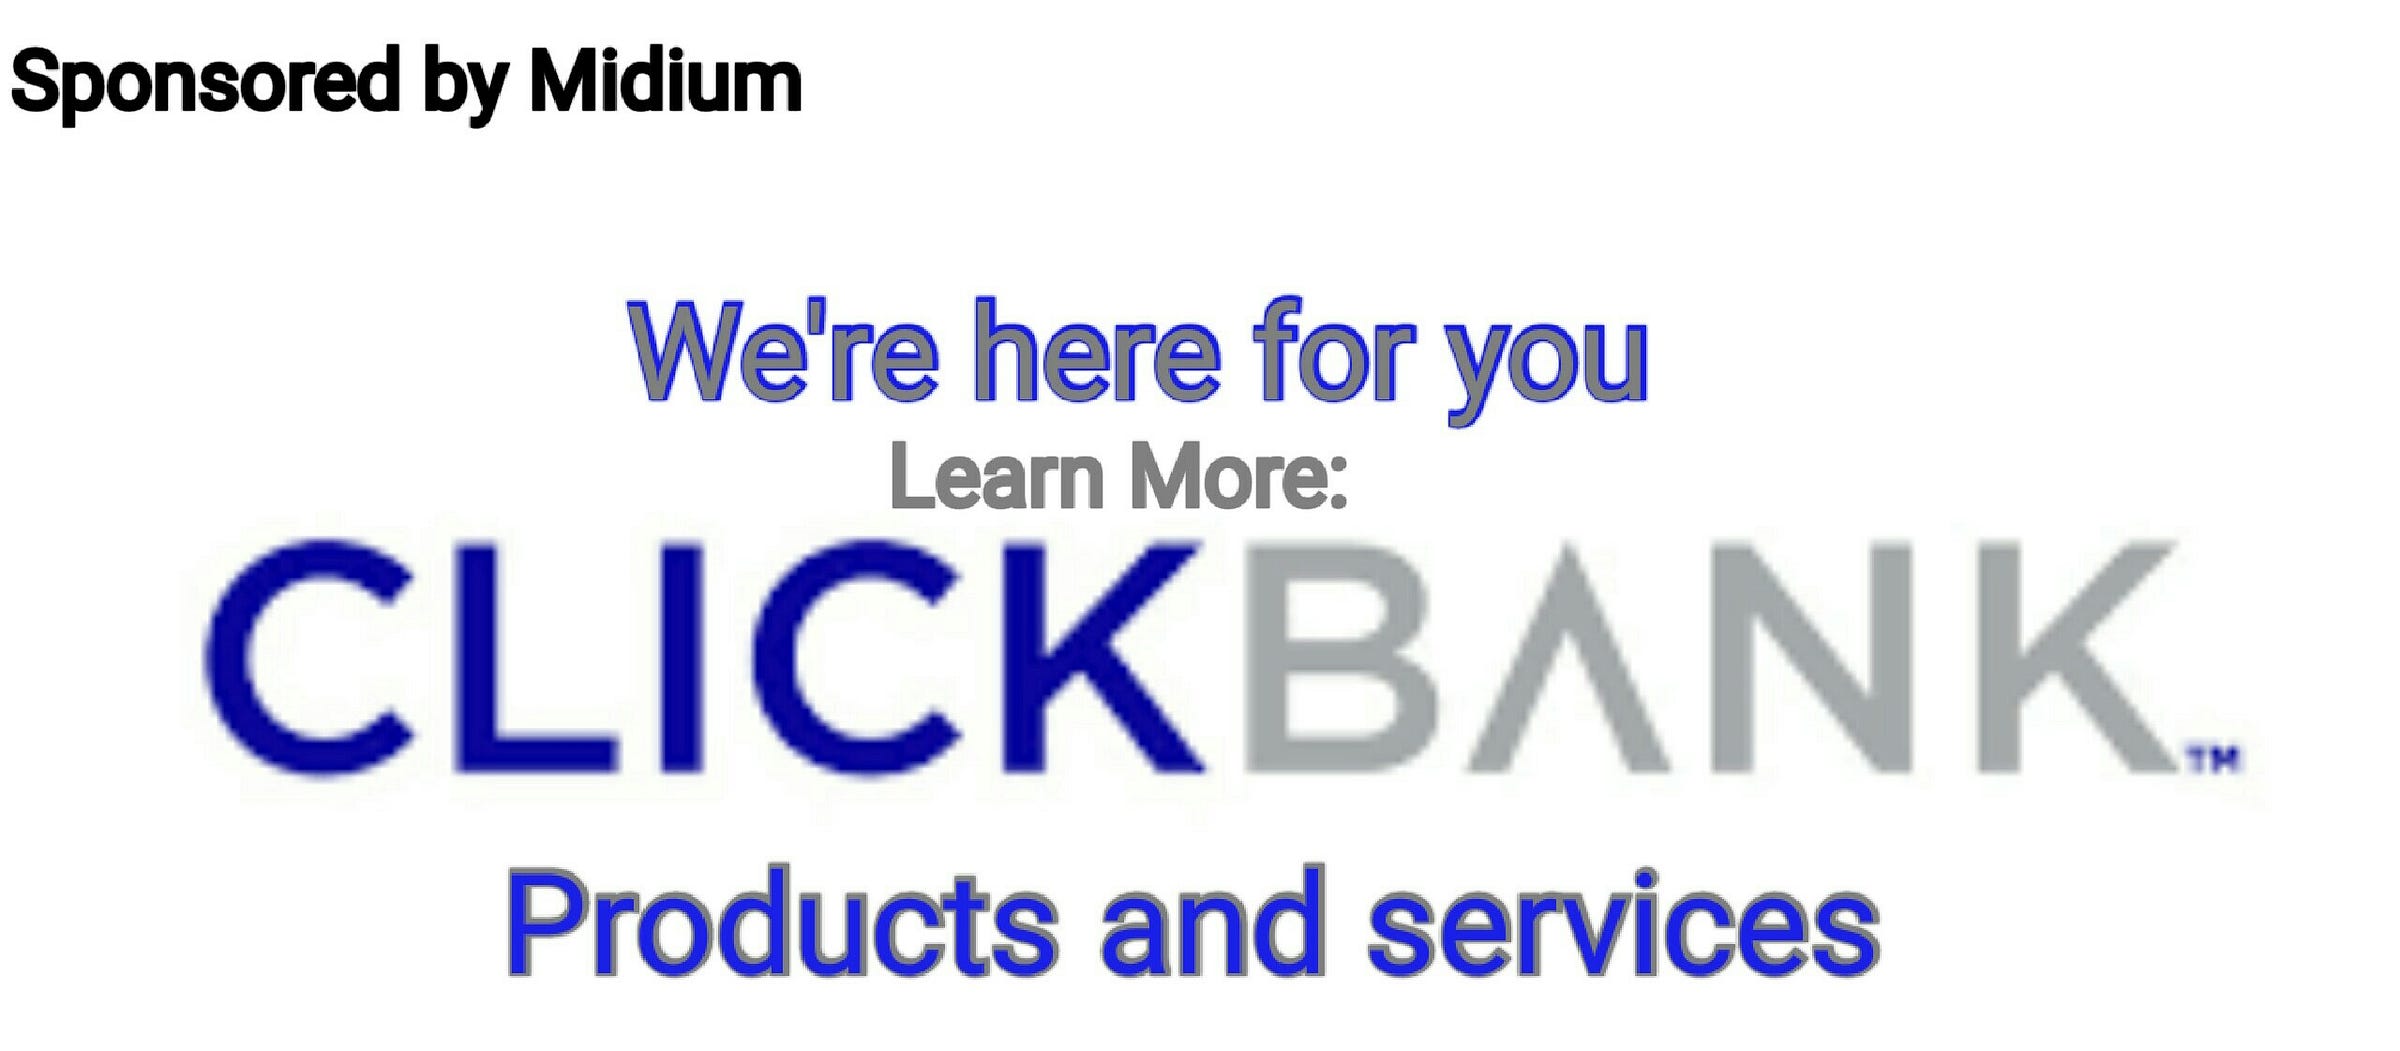 clickbank-medium